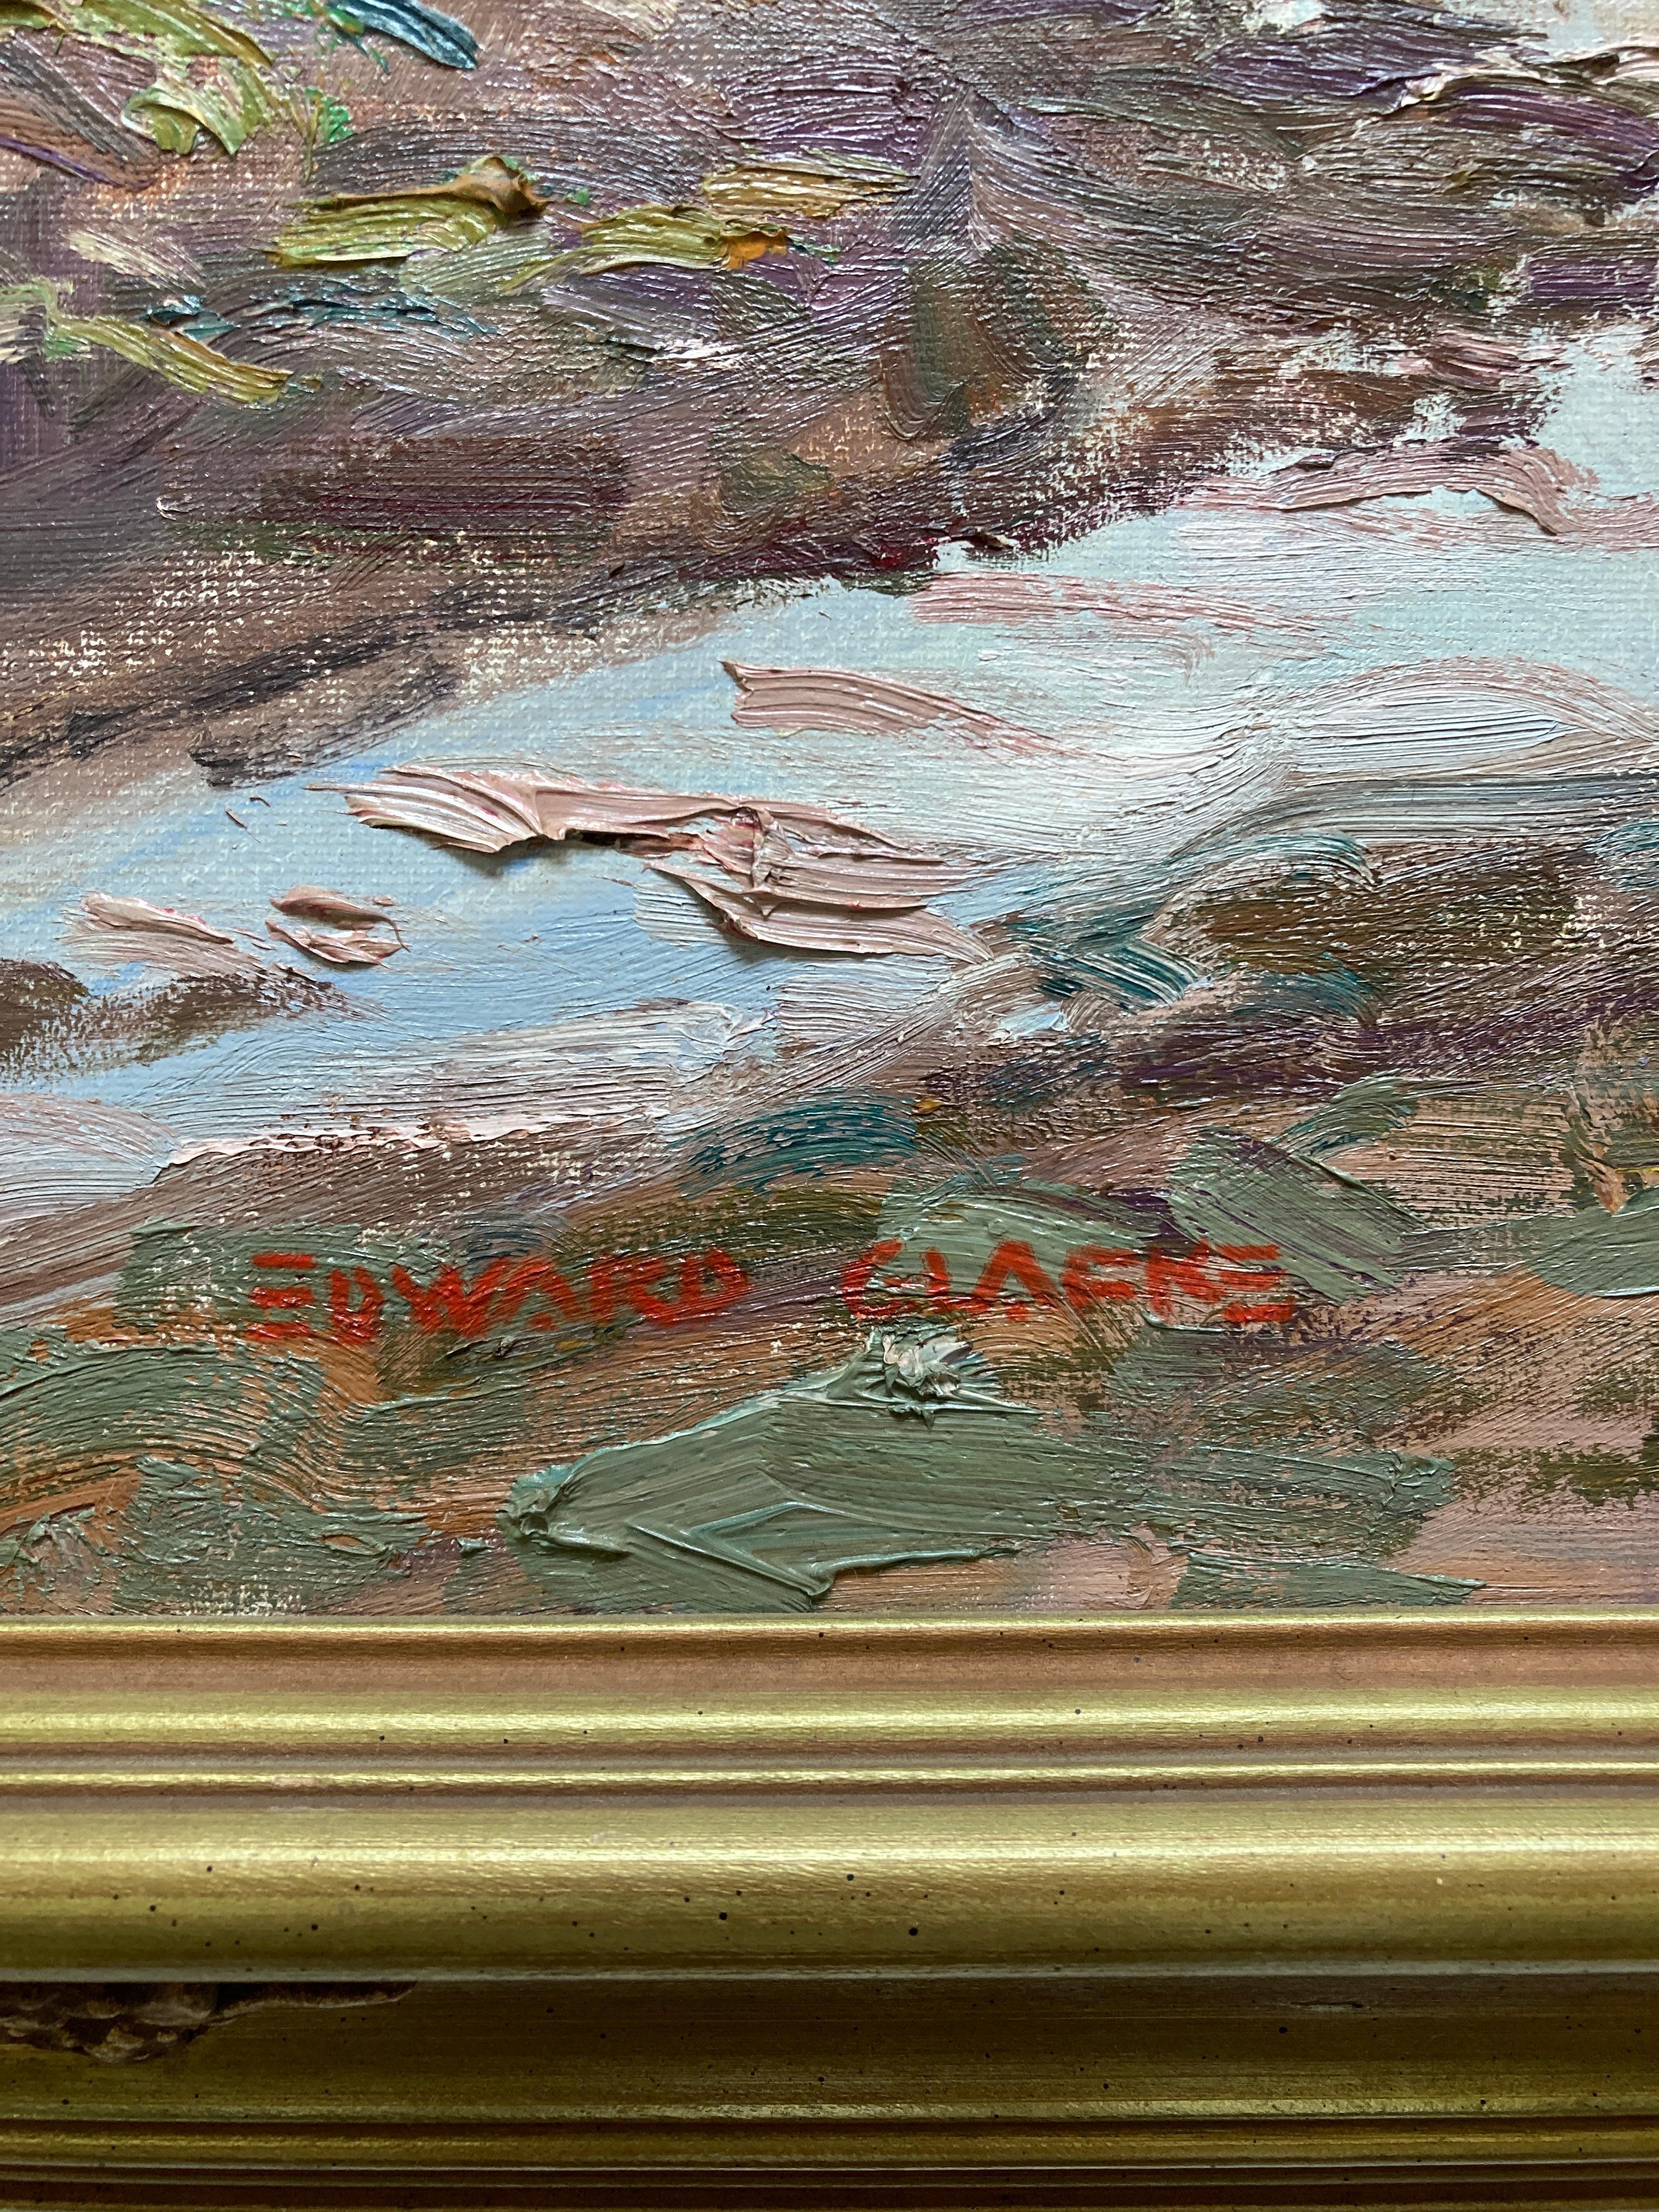 Edward Glafke 'Before Big Sur' Impressionist Landscape Painting For Sale 2